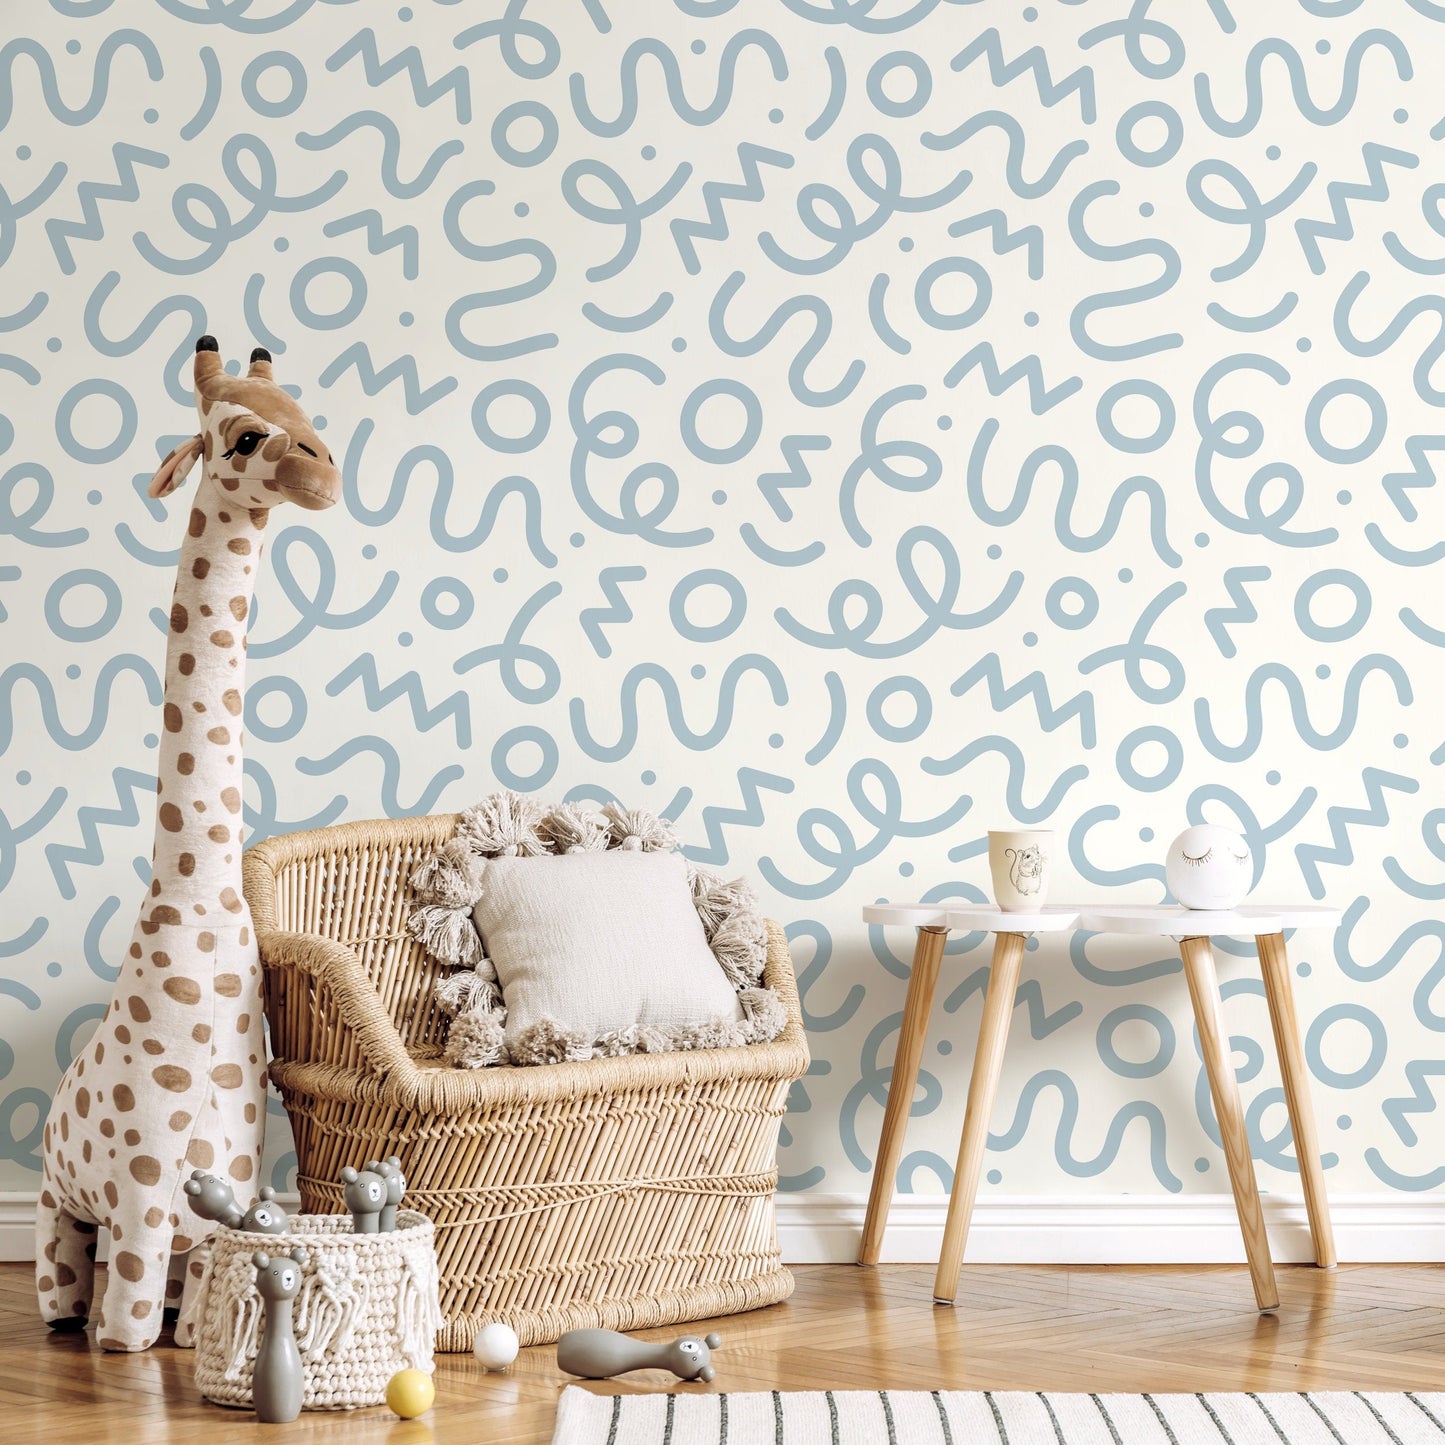 Light Blue Abstract Wallpaper Nursery Wallpaper Modern Wallpaper Peel and Stick Wallpaper Home Decor - D576